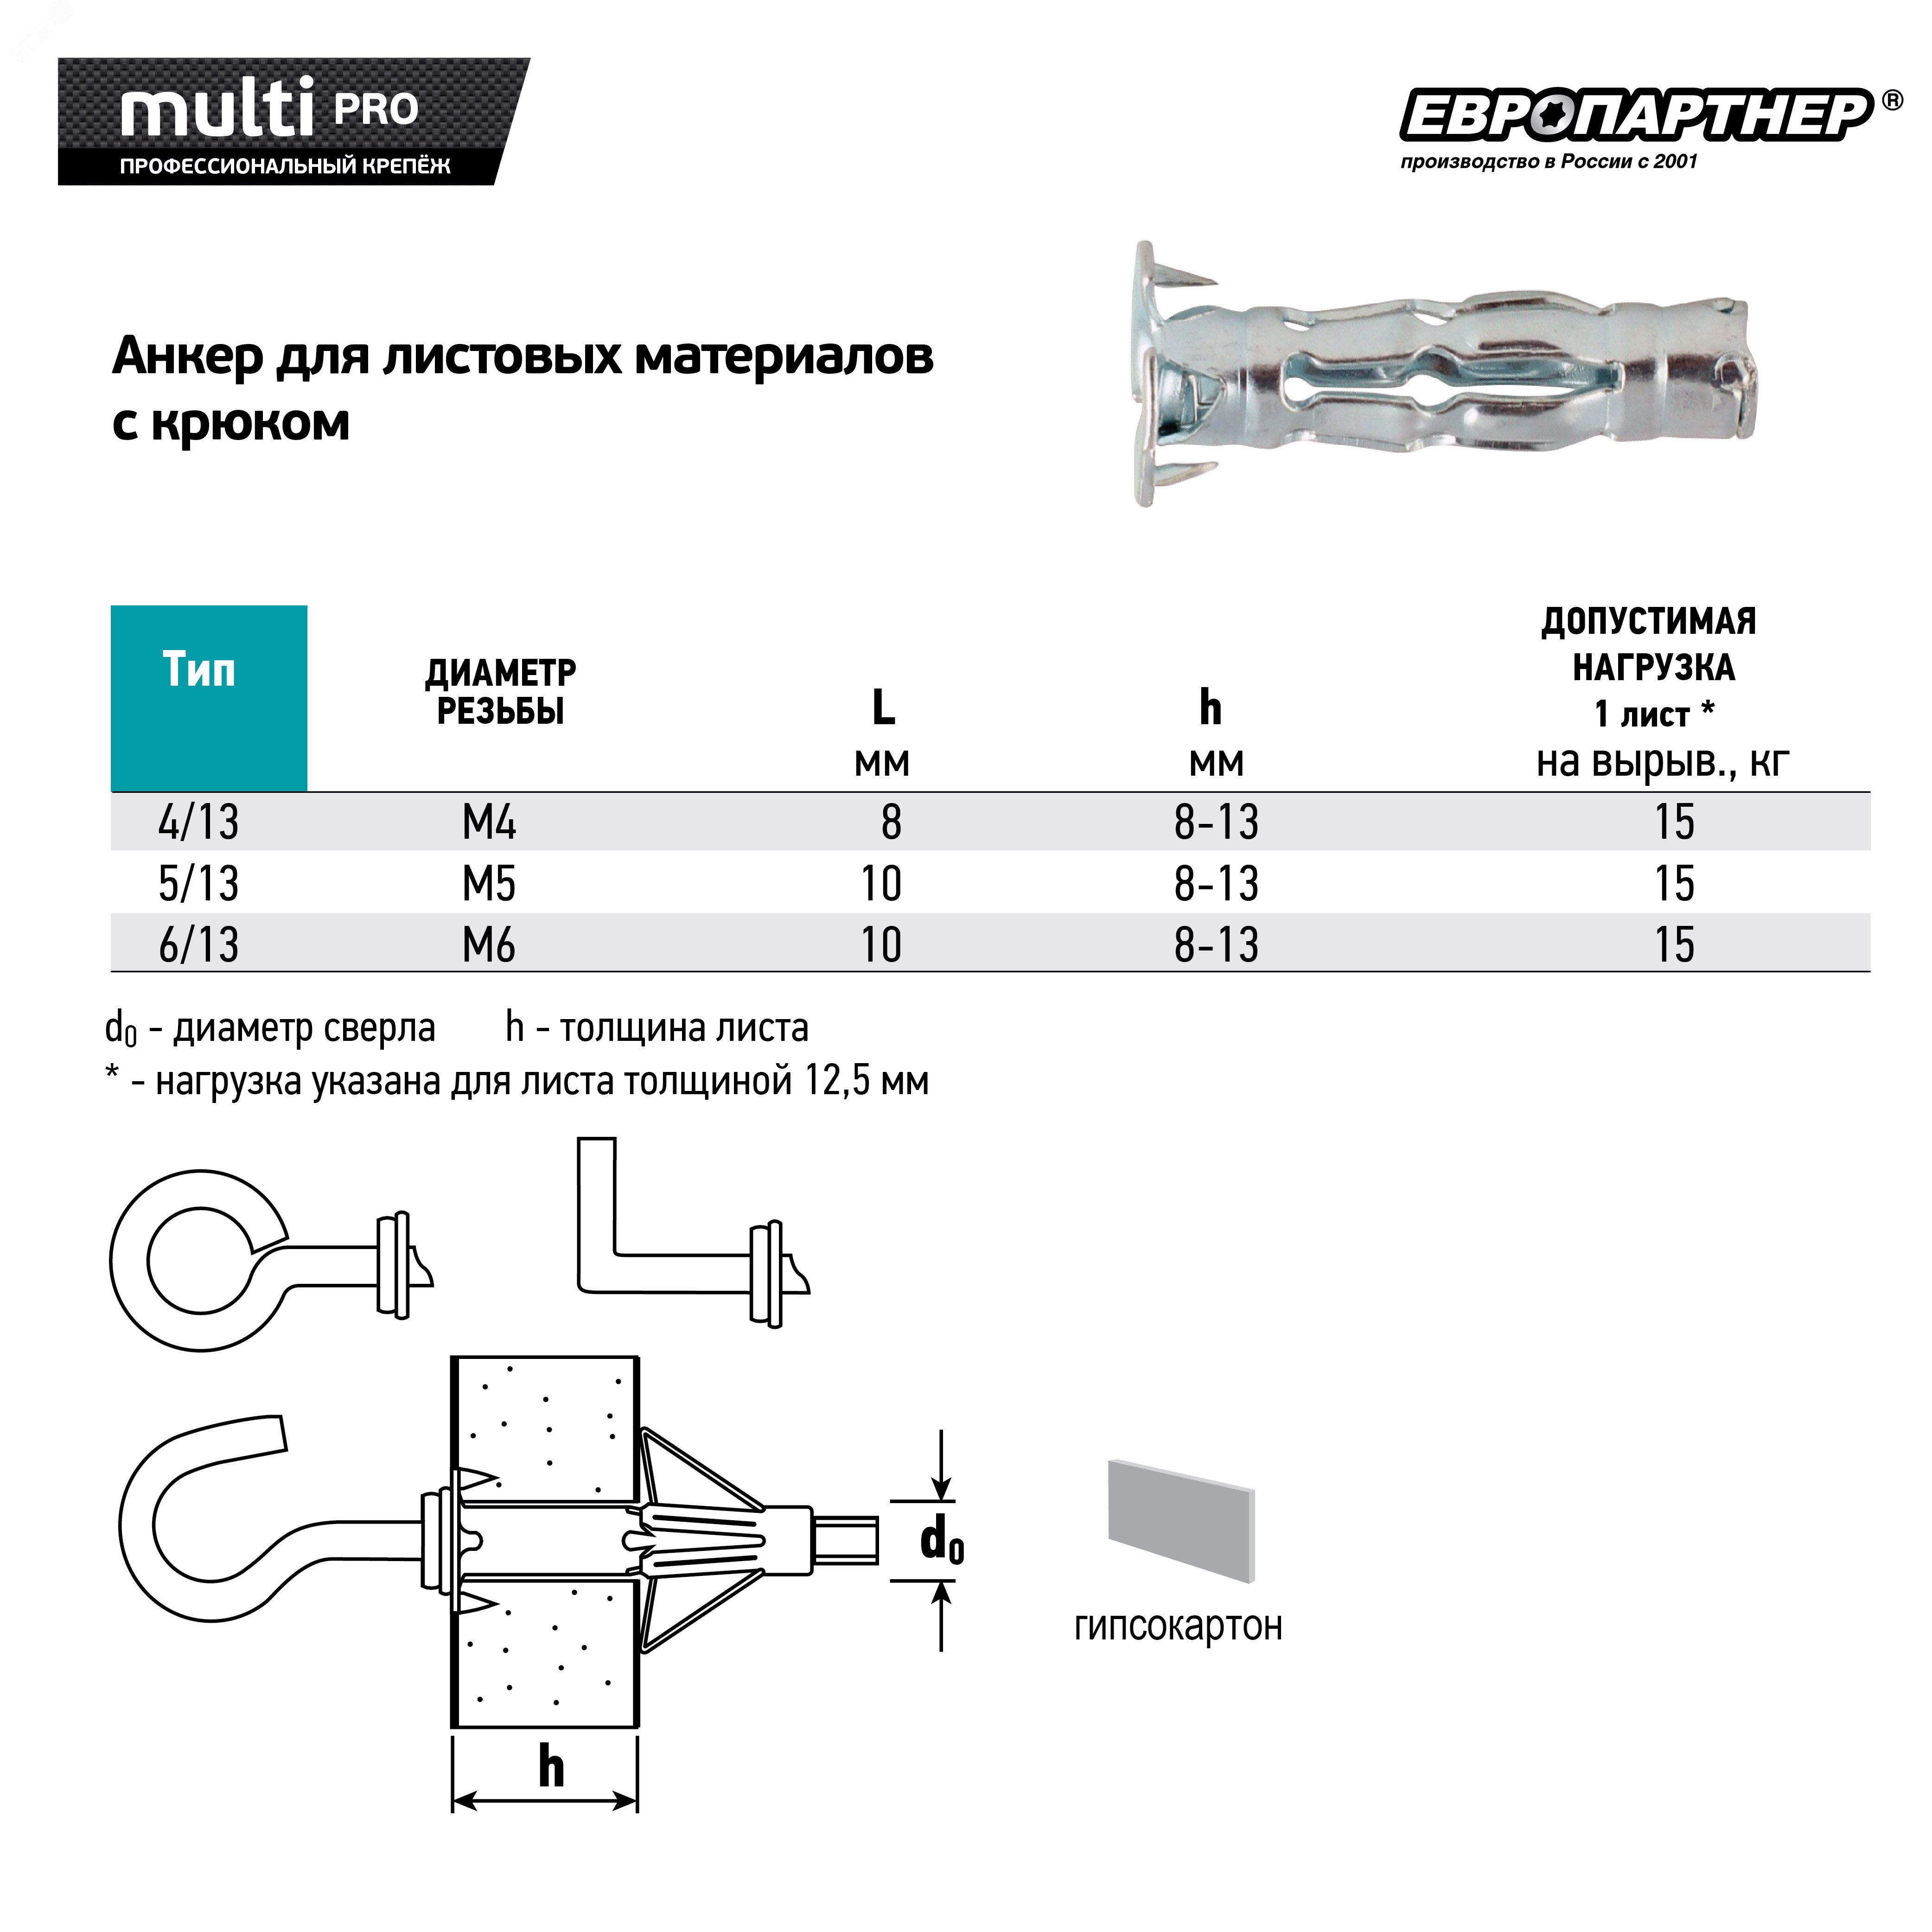 Анкер для листовых материалов с крюком MULTI PRO оцинкованный 6/13 мм (2 шт.) MPR 0377 Европартнер - превью 4